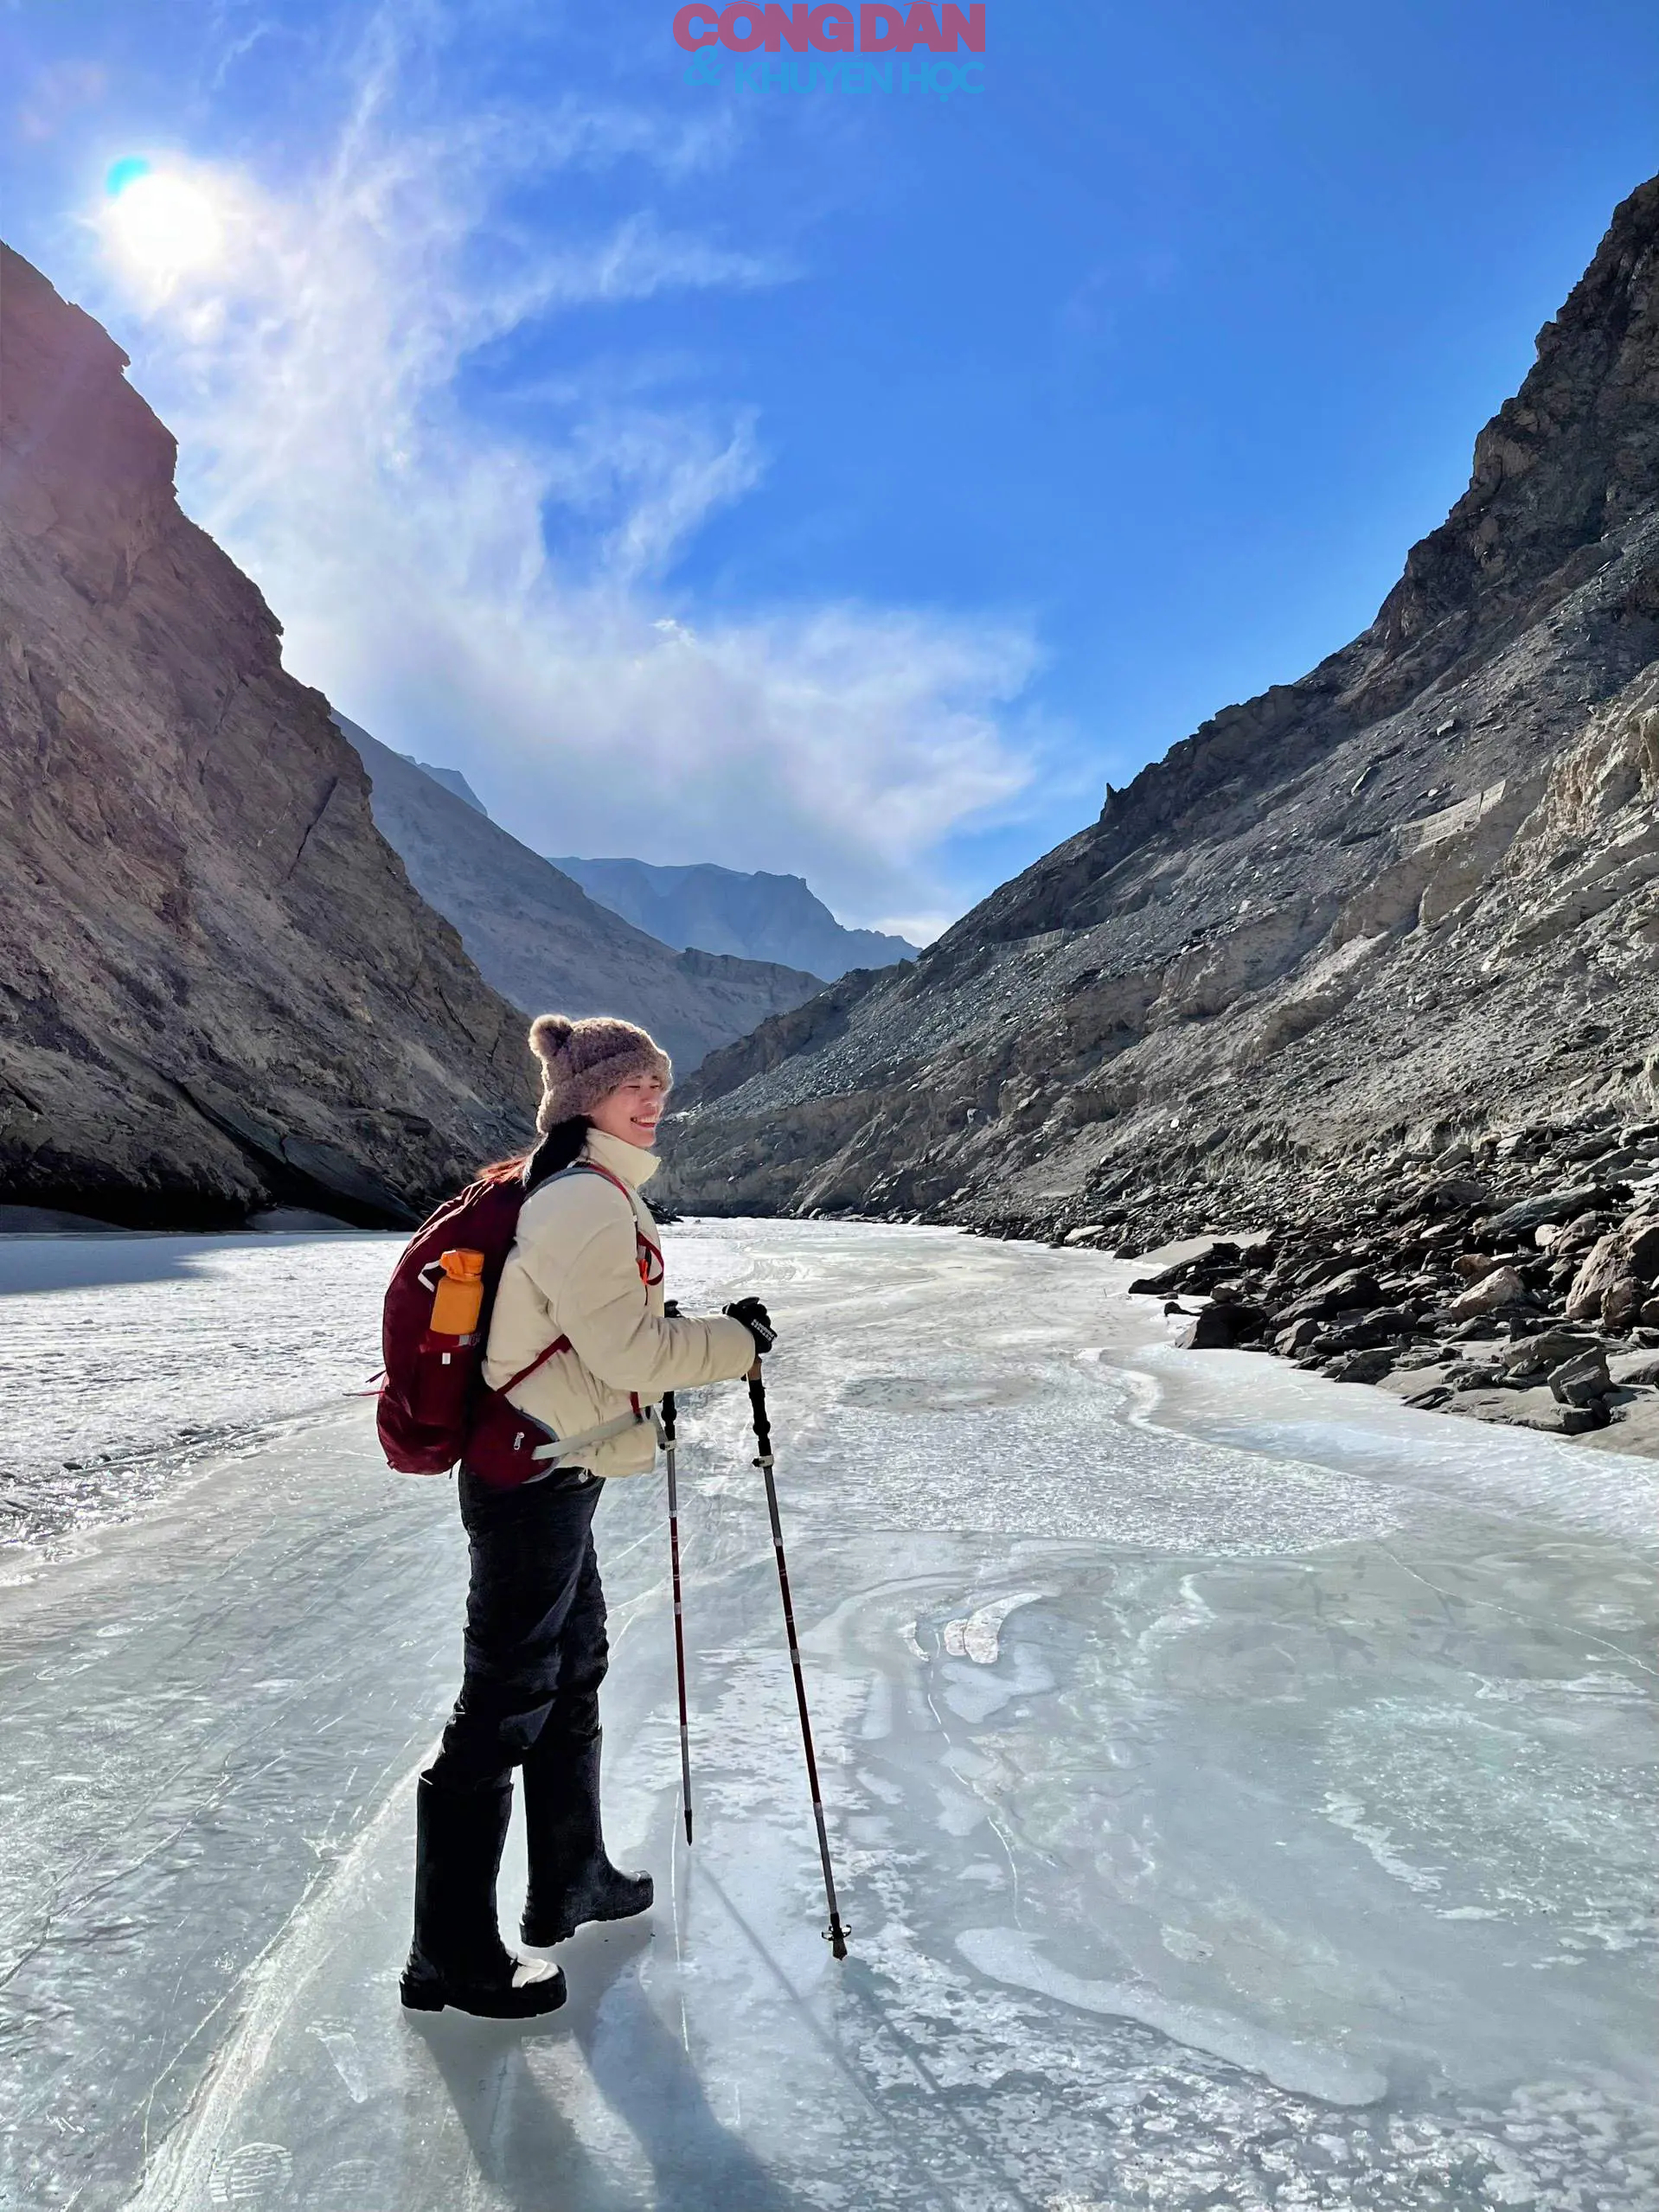 Dạo chơi trên sông băng Ladakh, Ấn Độ - trải nghiệm của những tâm hồn tự do- Ảnh 6.